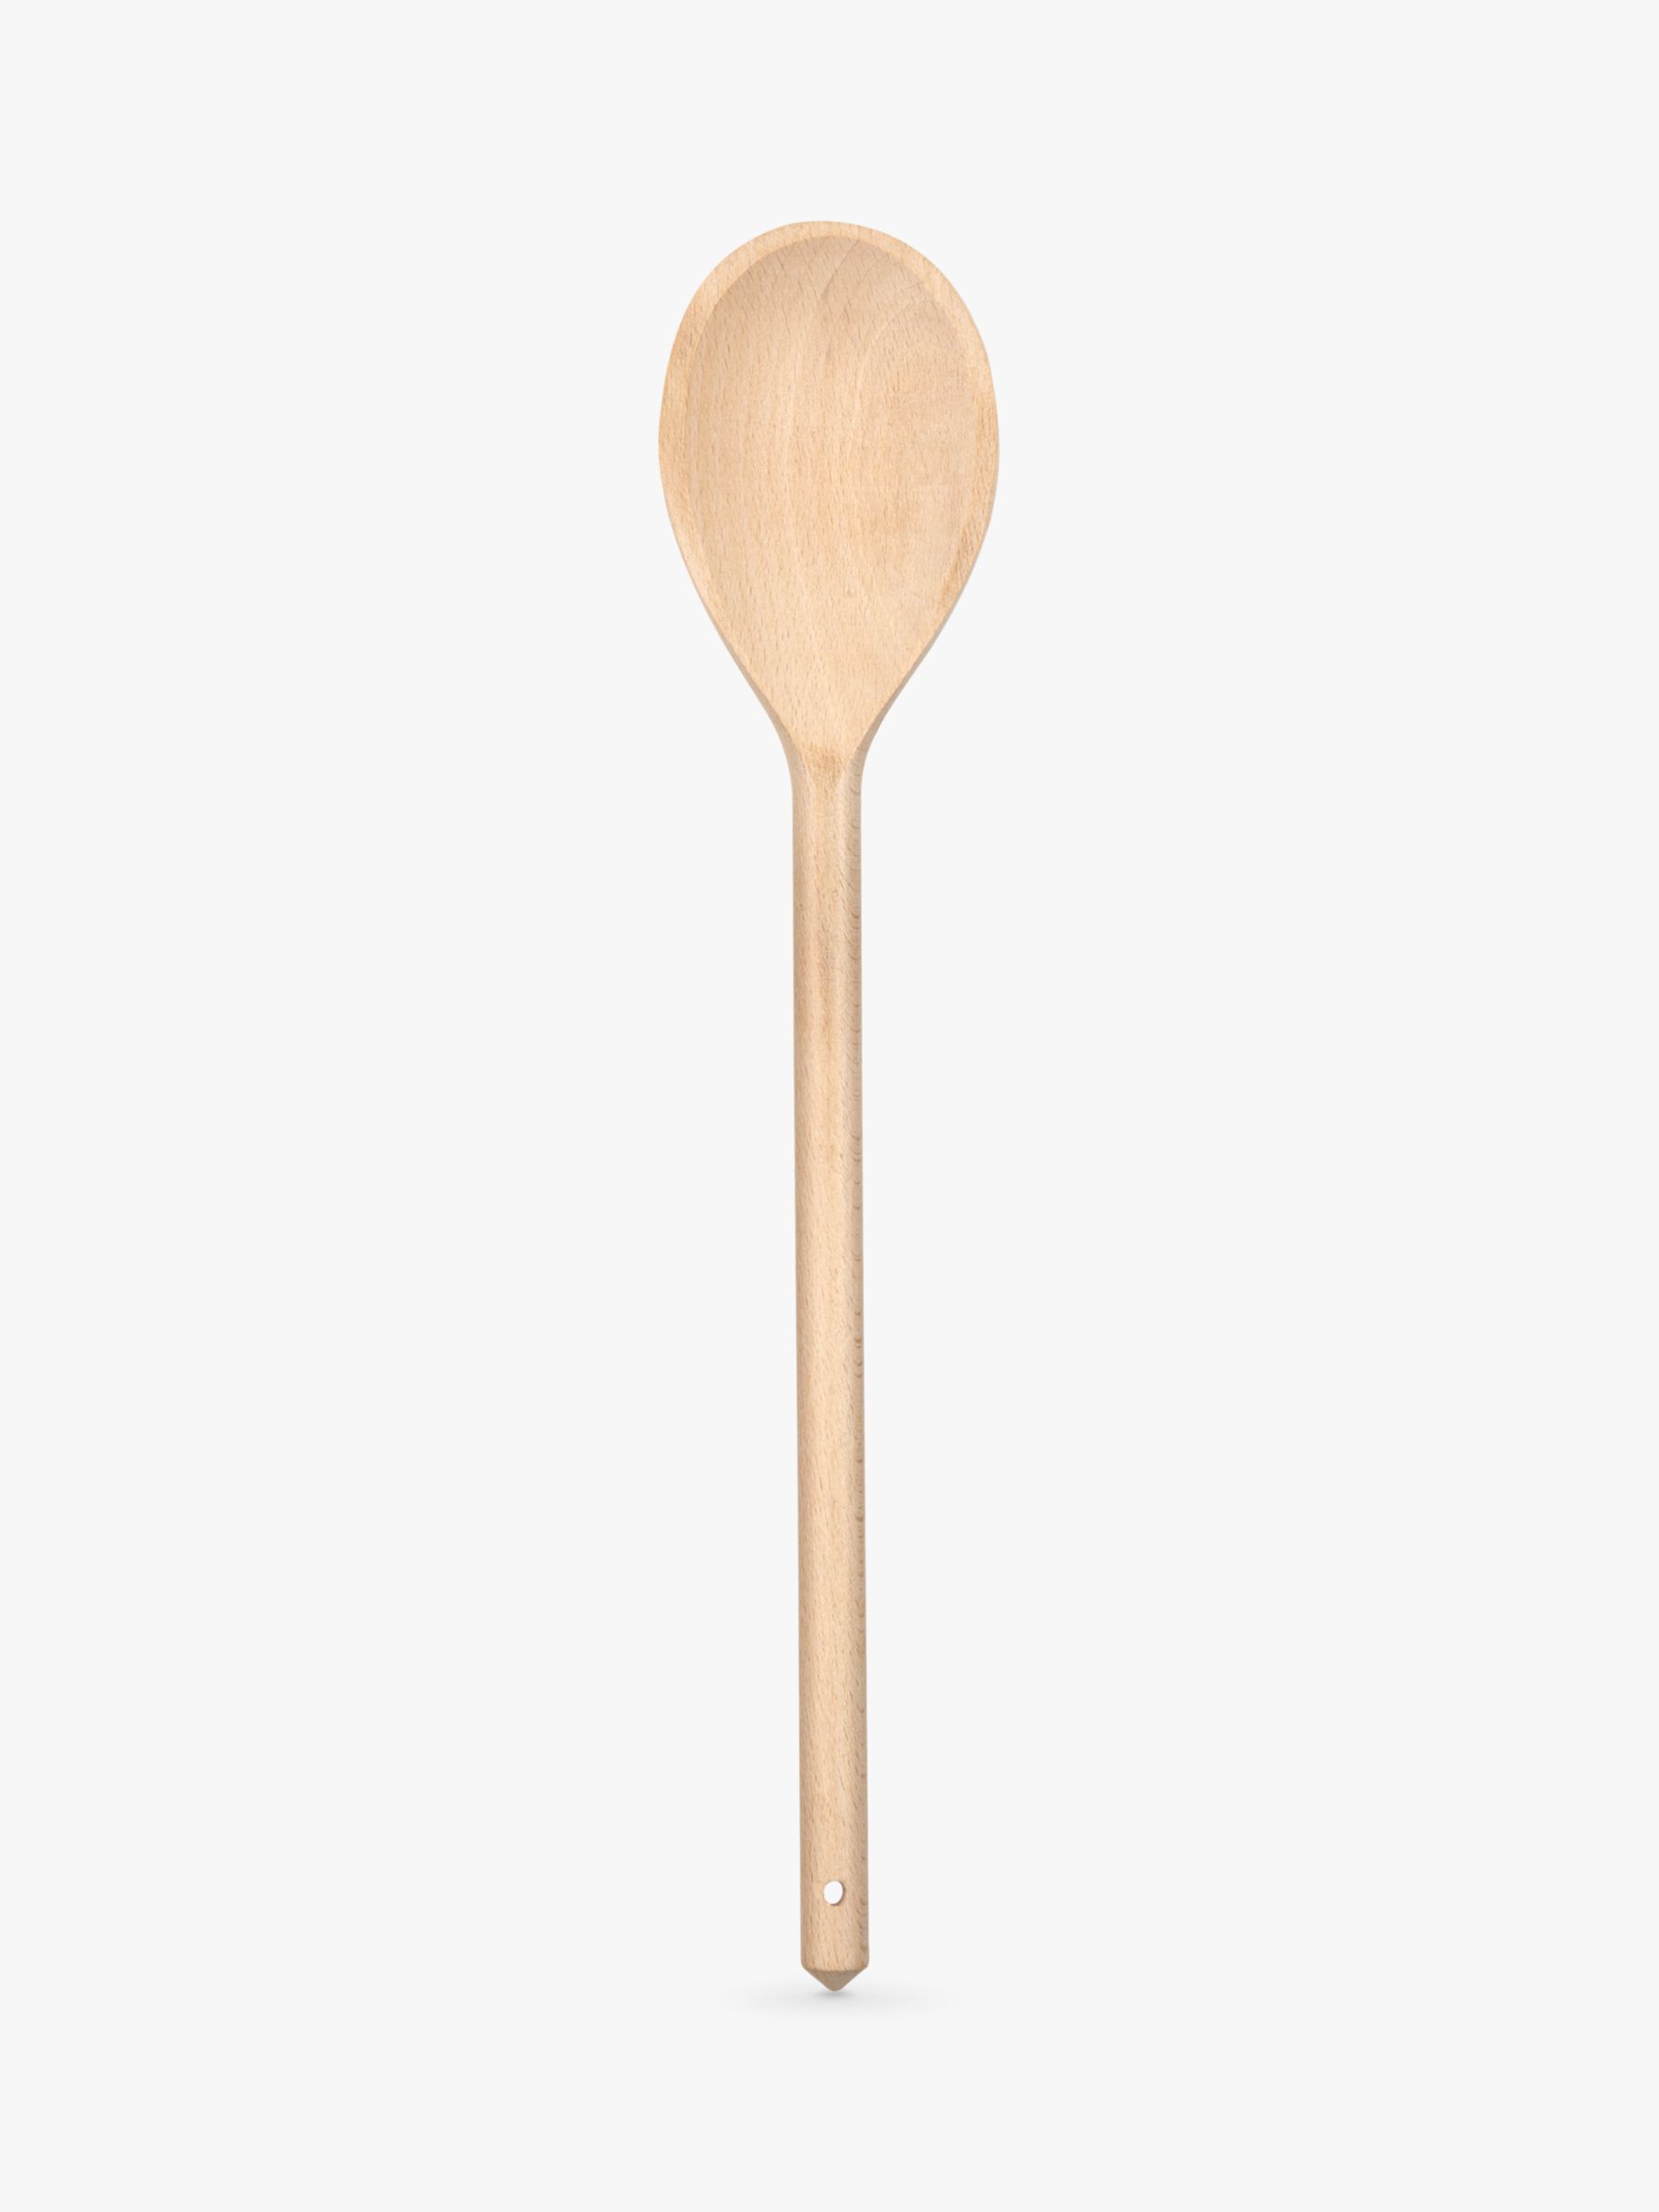 woodenspoon